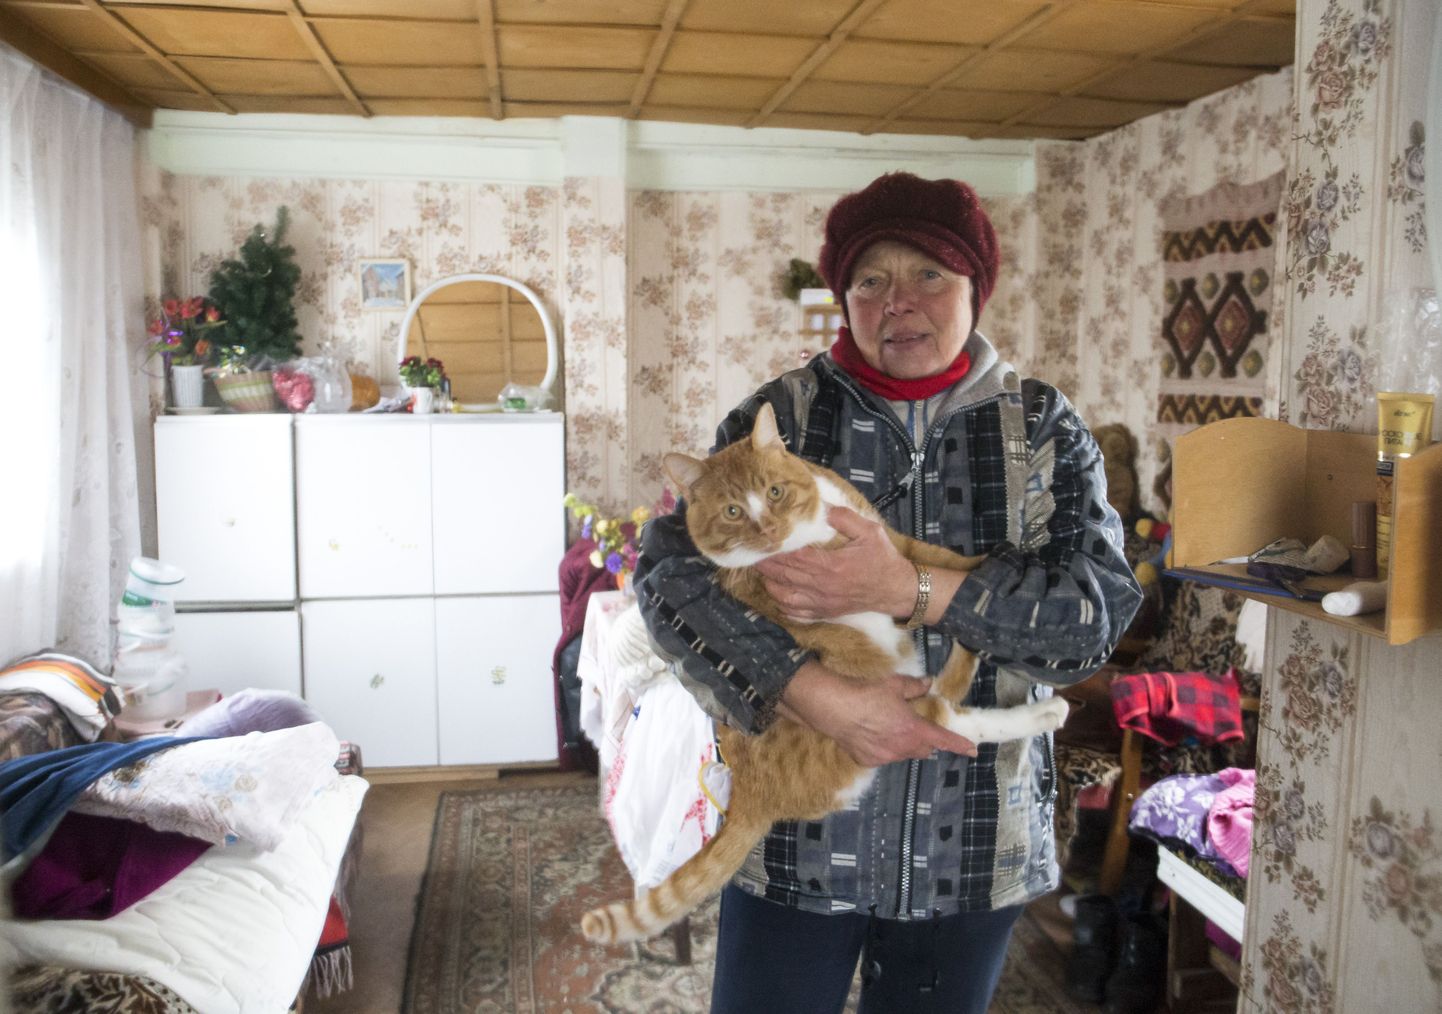 Punane kass Rõžik, keda Taja iga päev toitmas käib. Rõžik eelistab elada linna asemel Soodevahe külas.